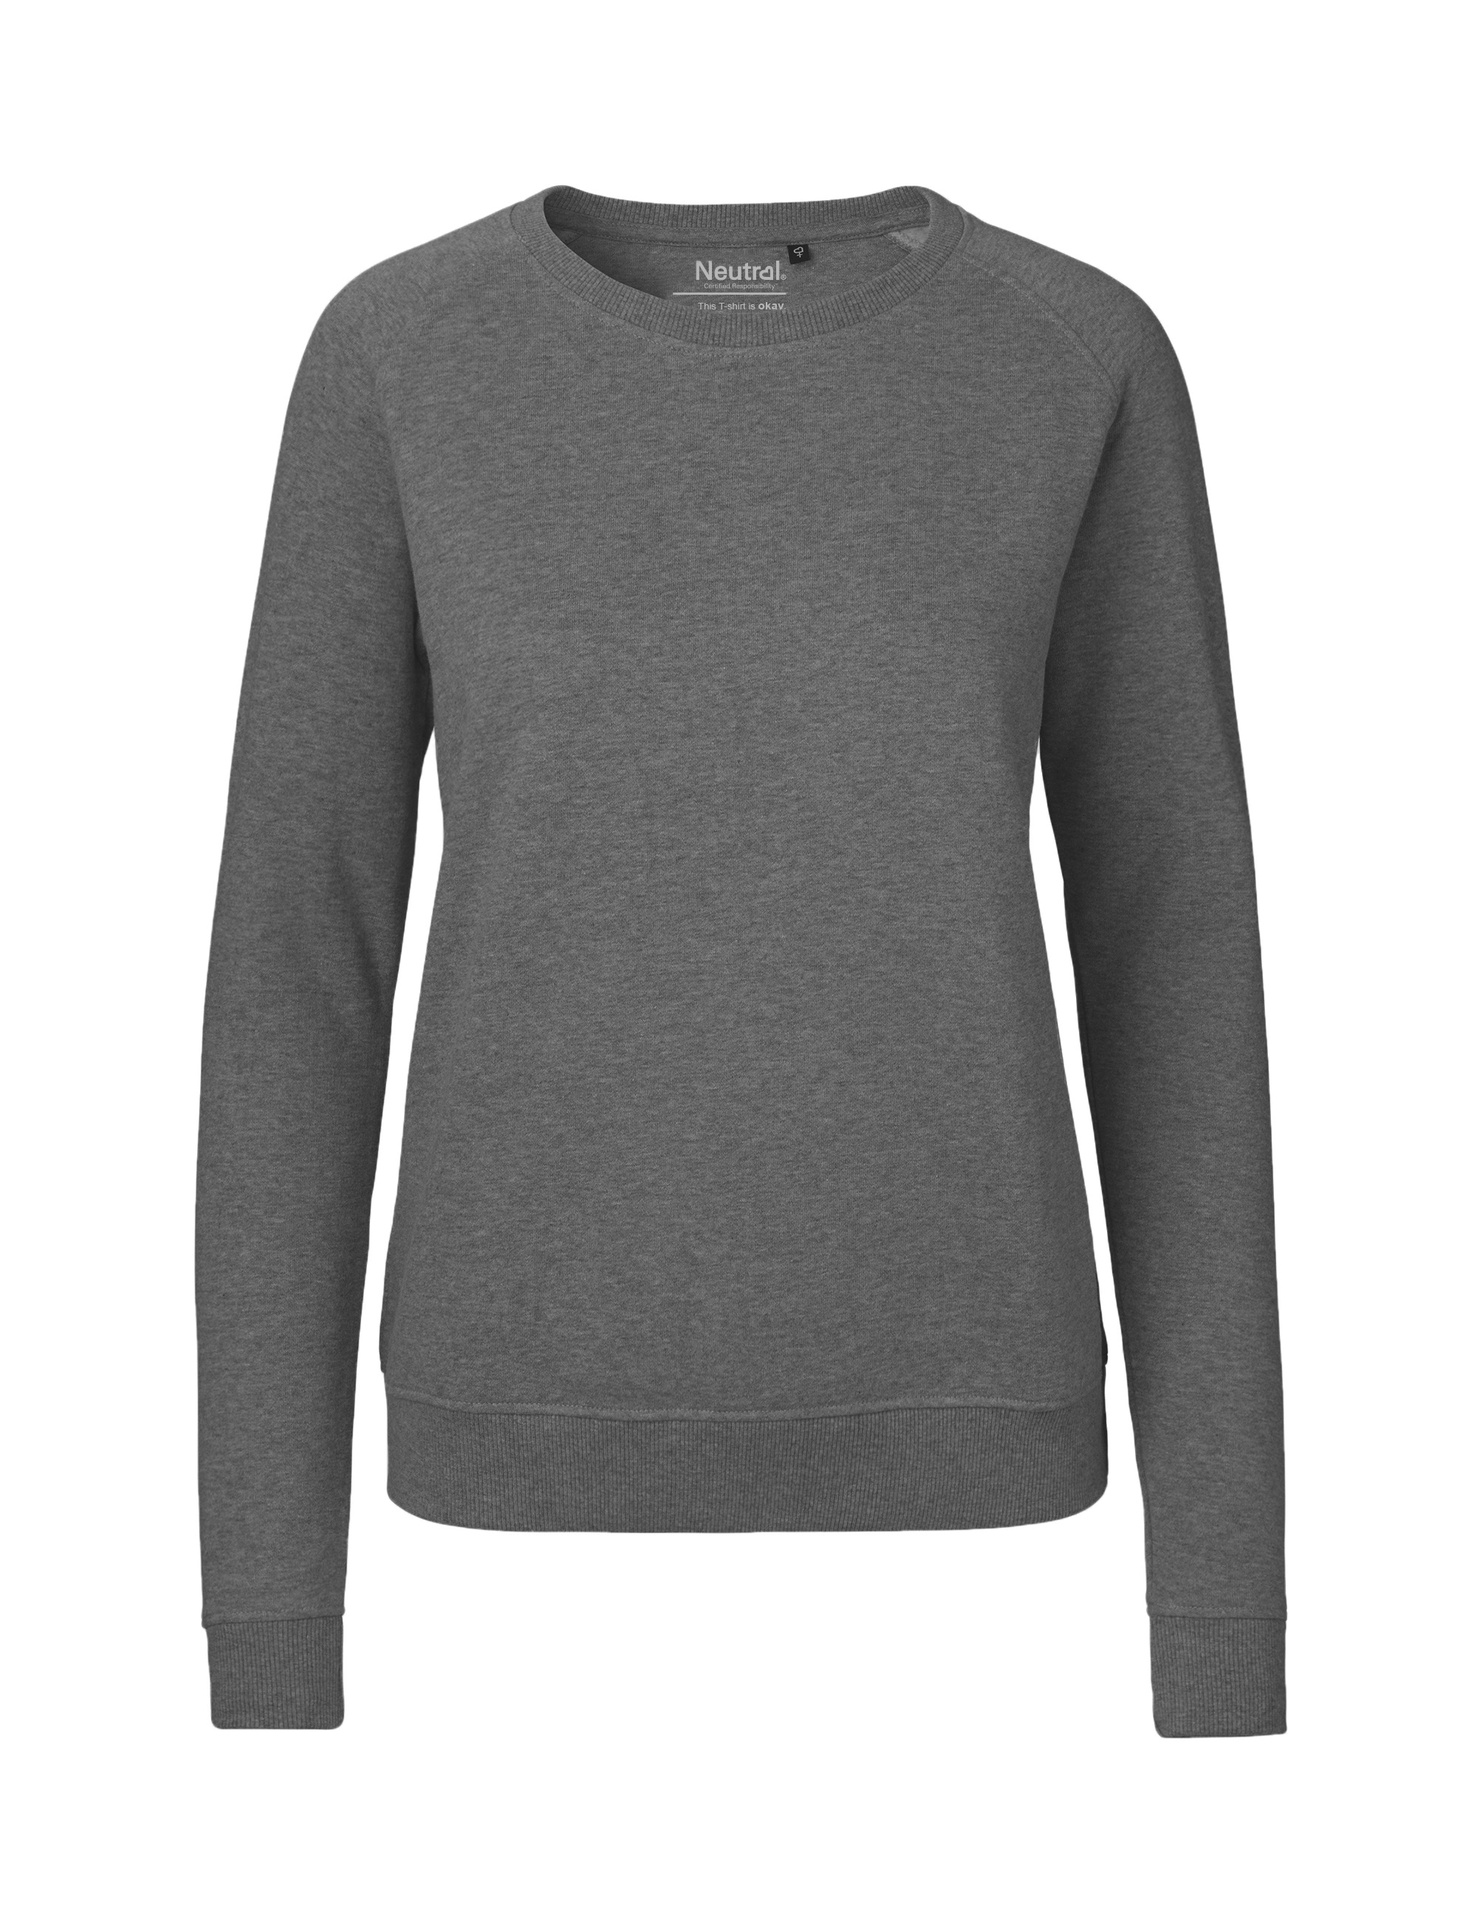 [PR/04877] Ladies Sweatshirt (Dark Heather 08, L)